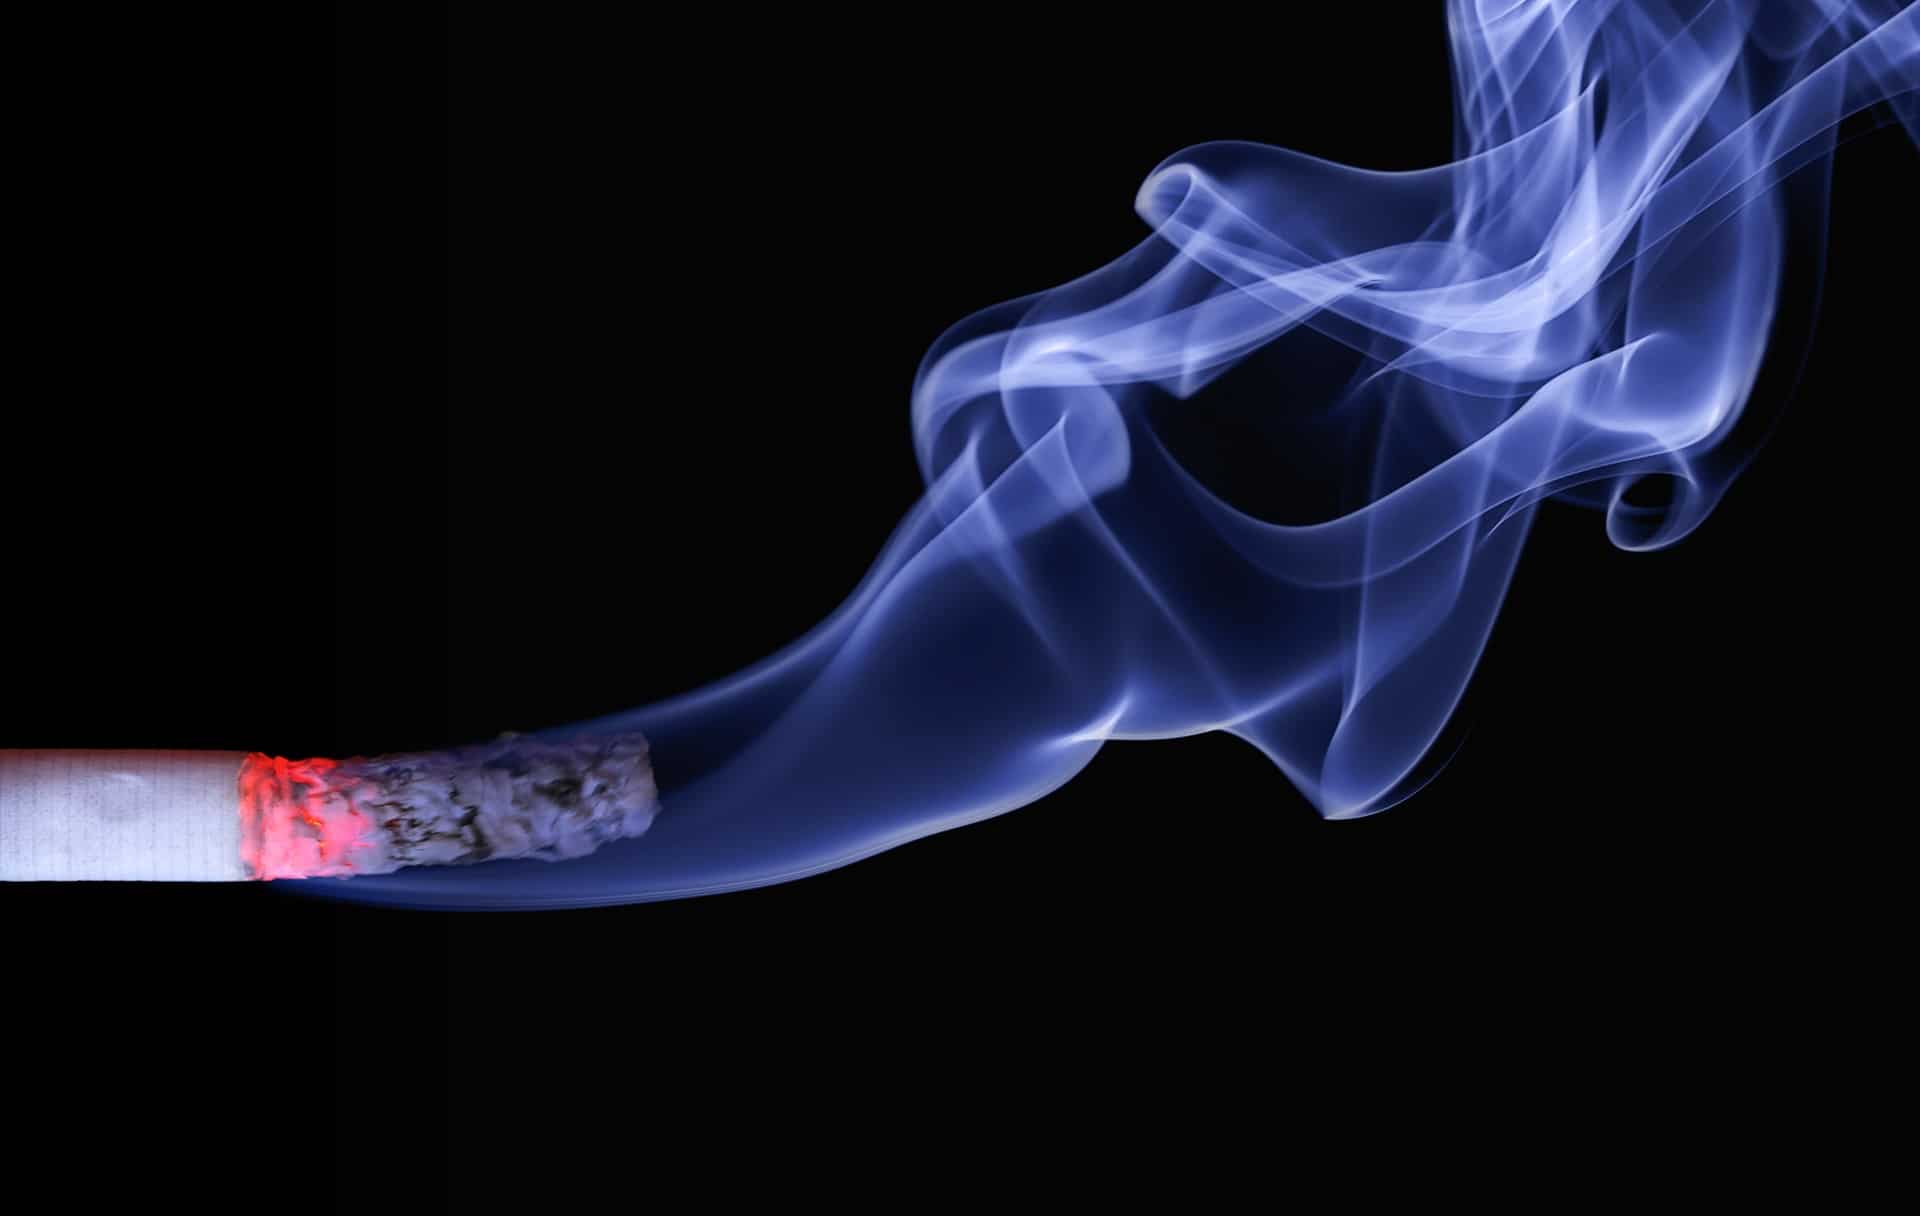 Roken na een tandextractie en nicotine stomatitis uitgelegd